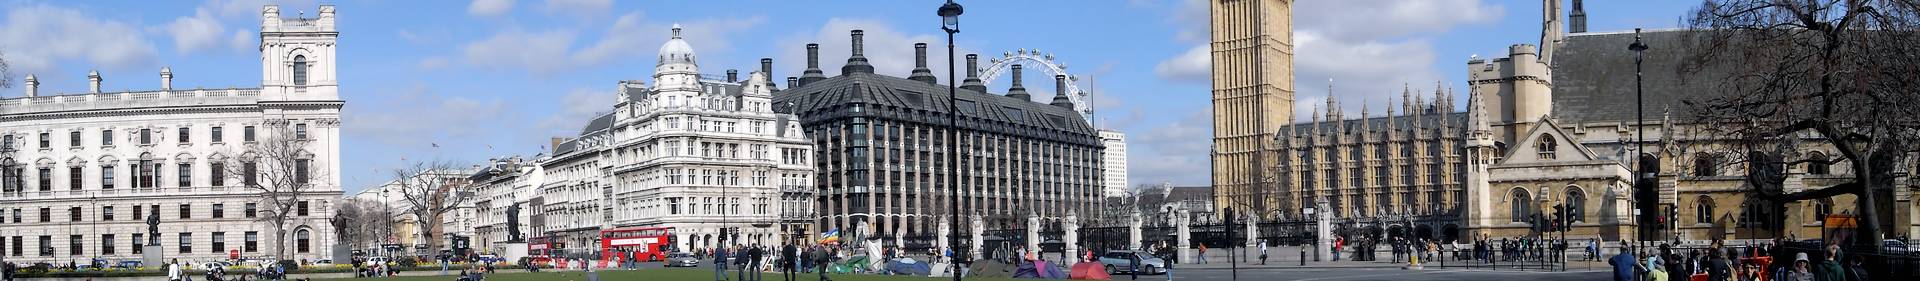 Parliament buildings in UK